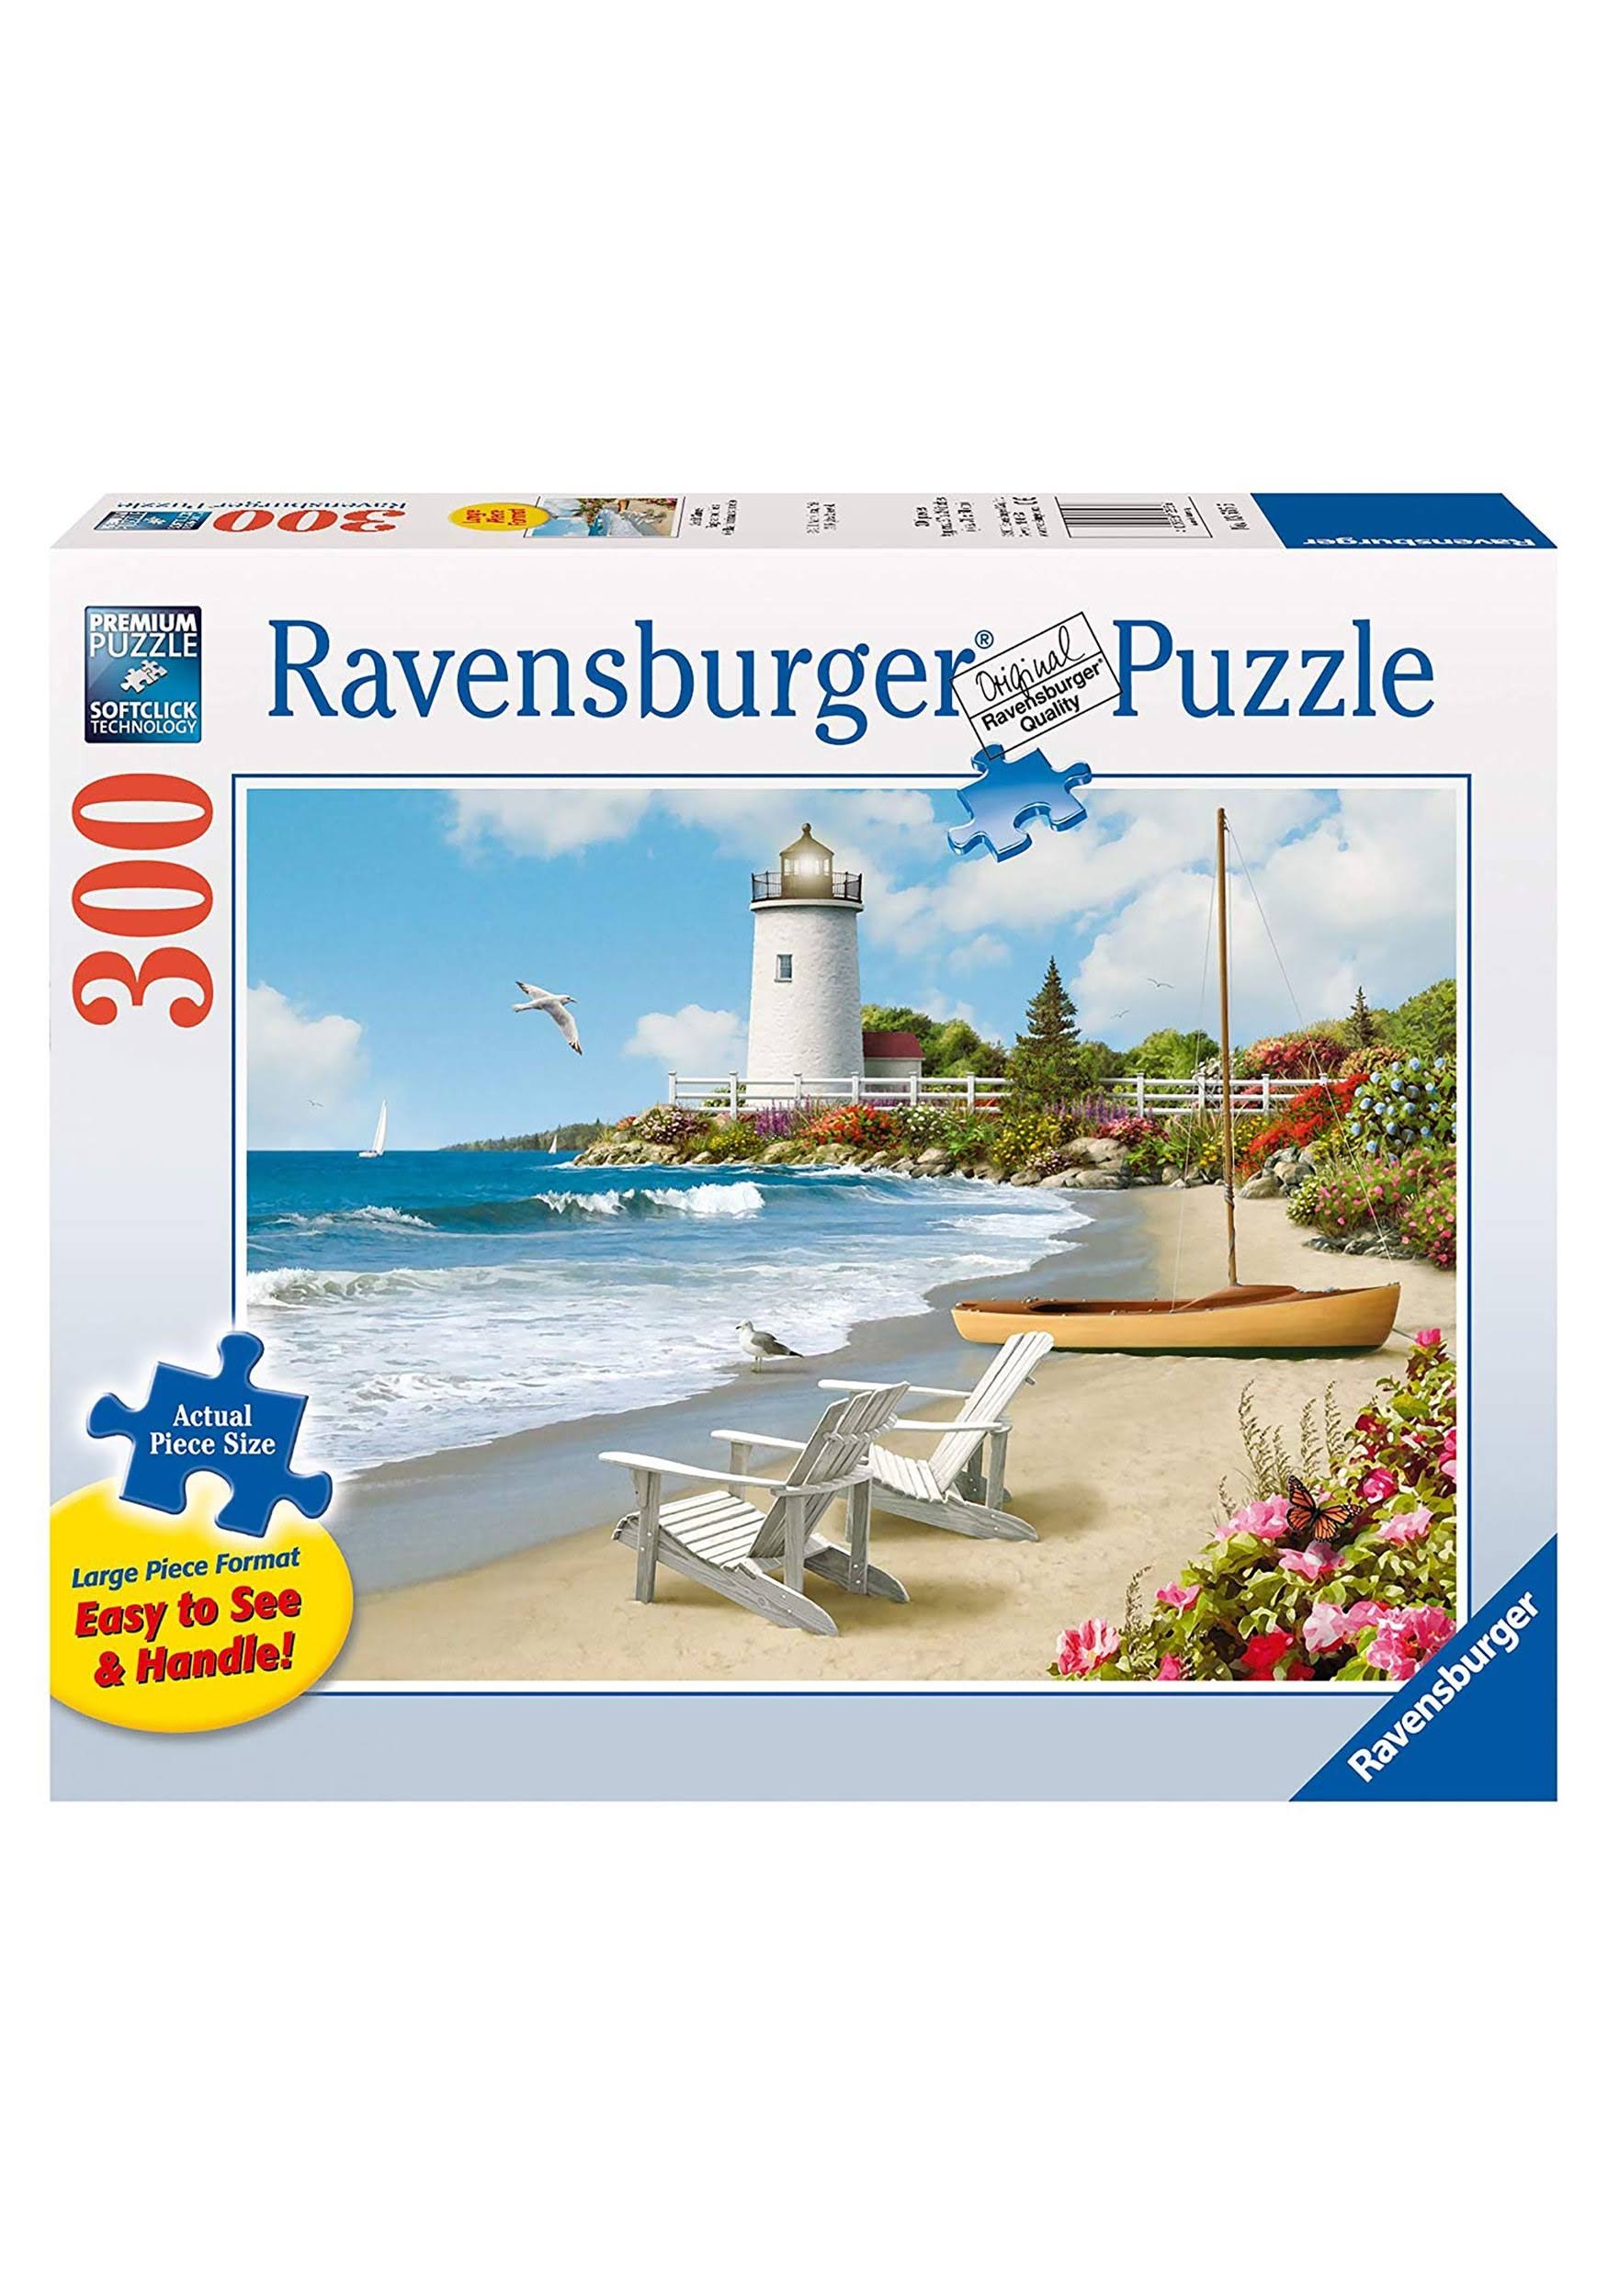 Ravensburger Jigsaw Puzzle - Sunlit Shores, 300 Pieces